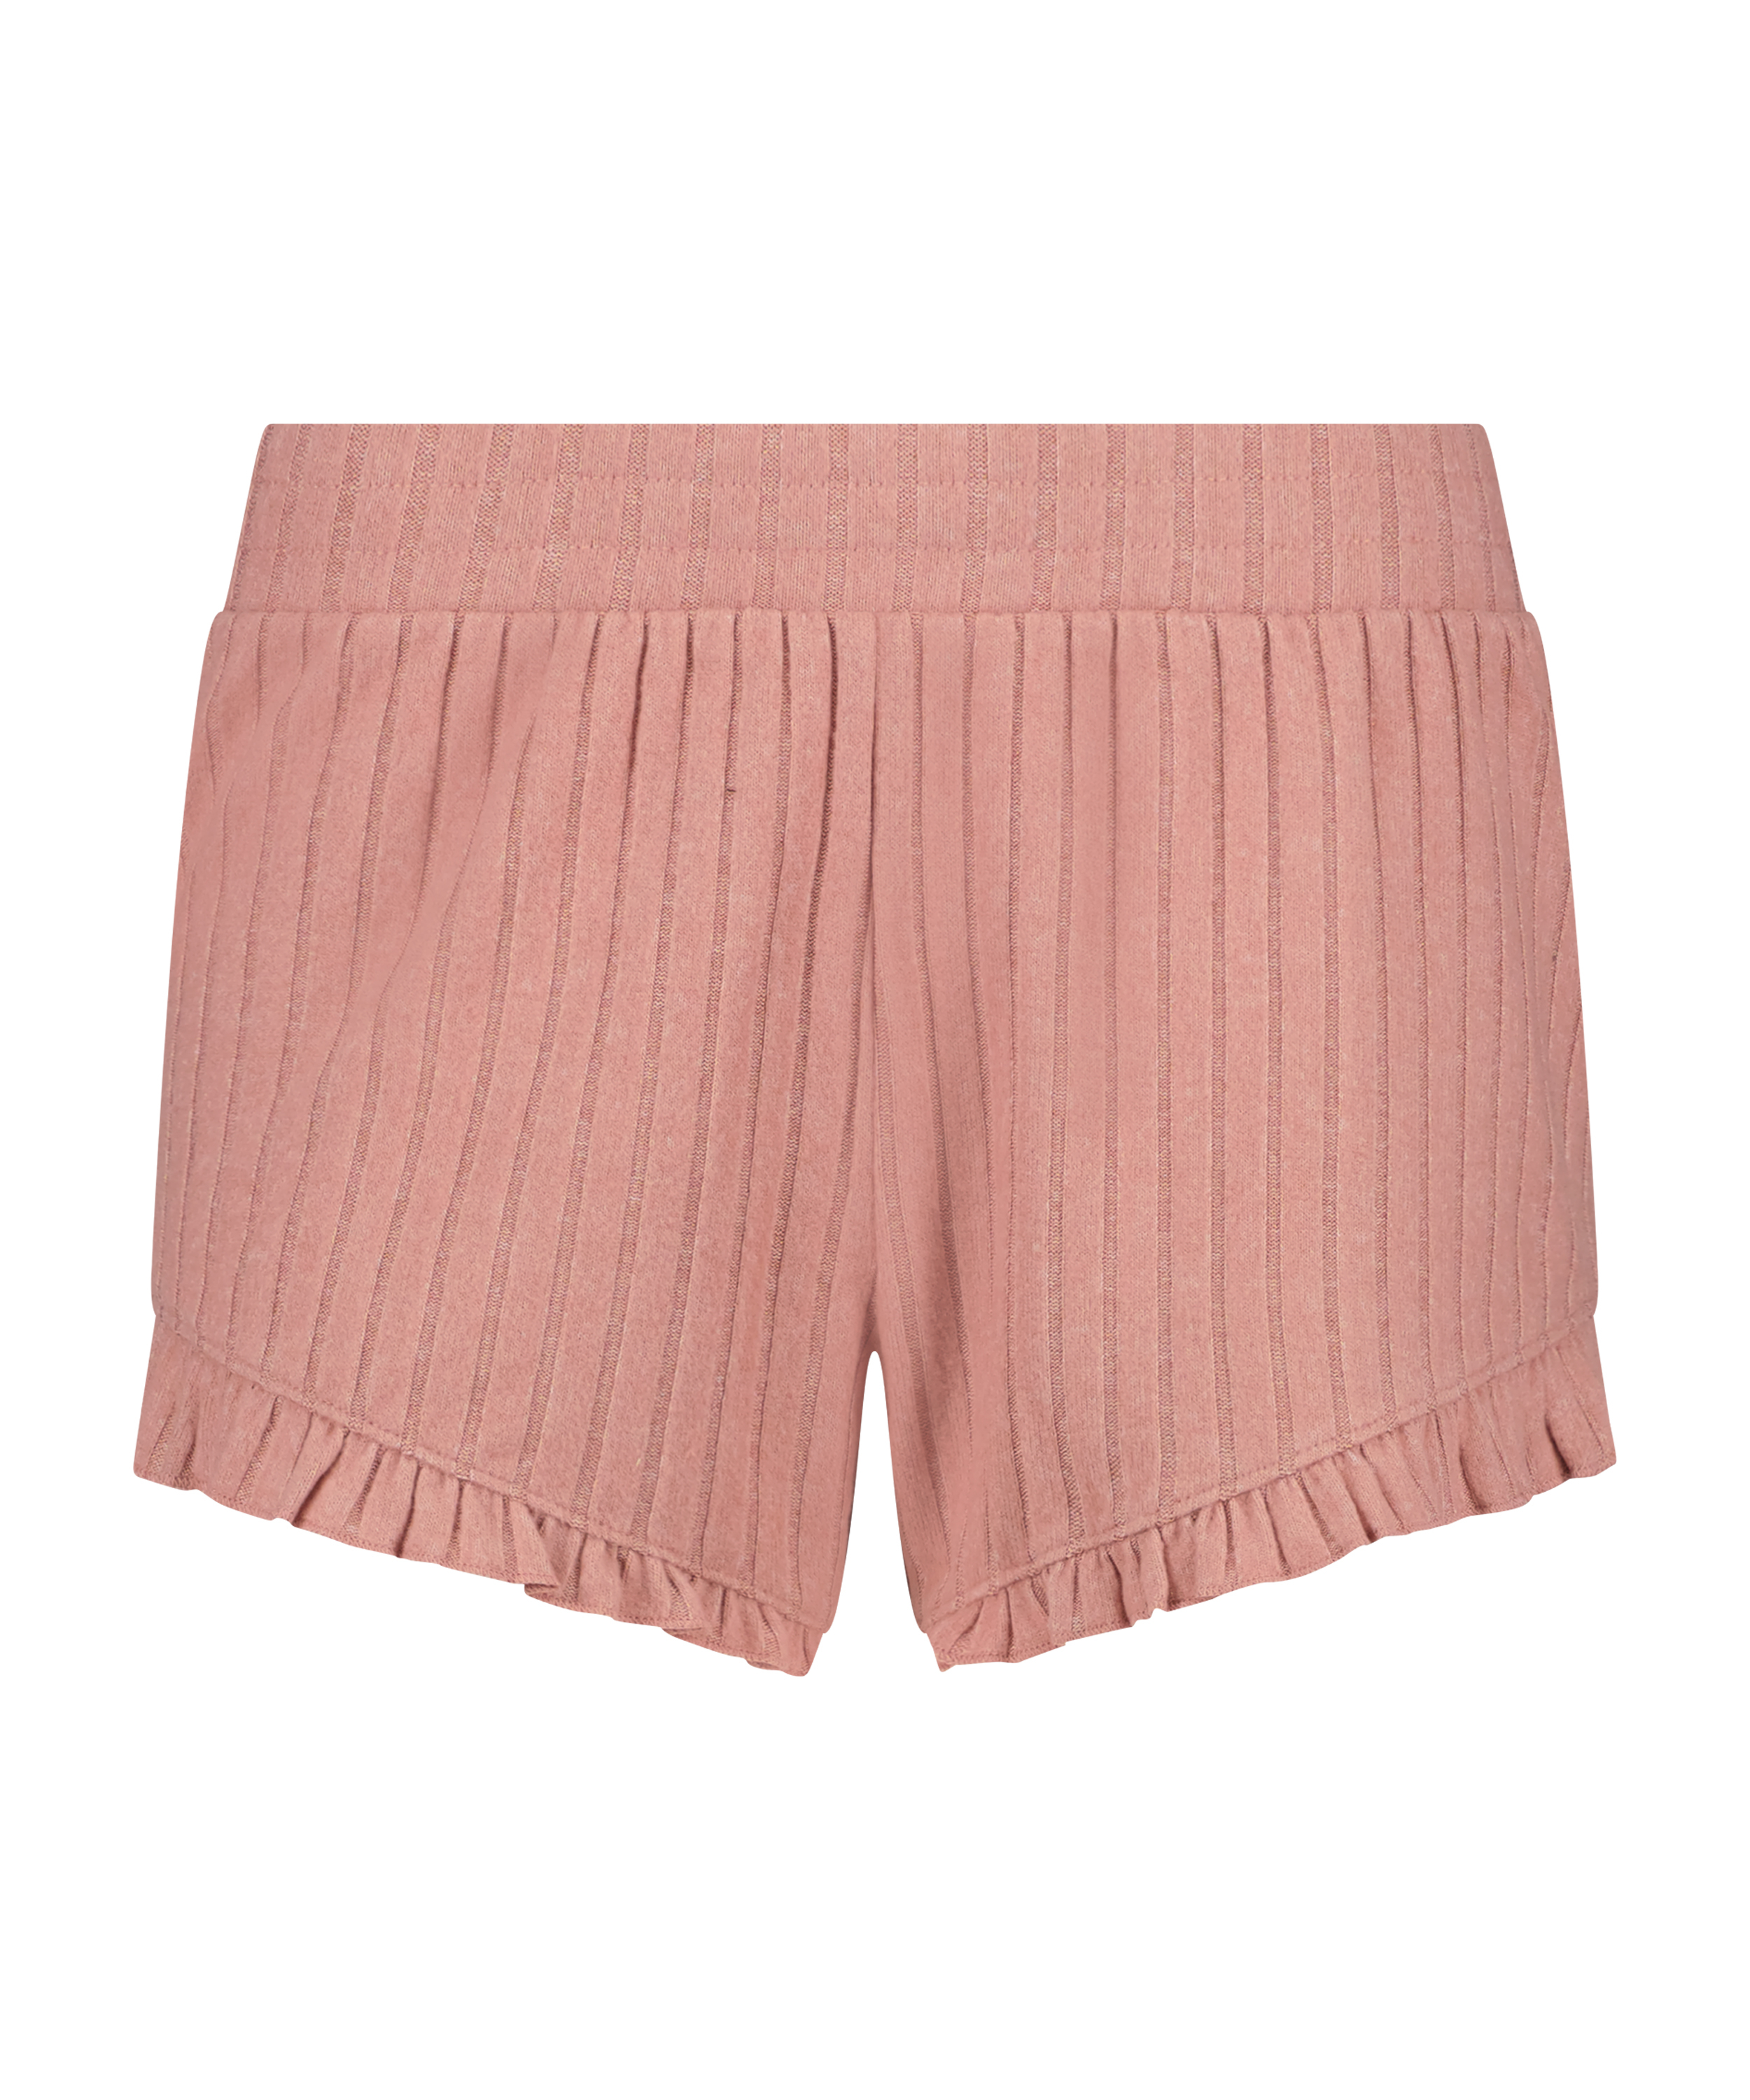 Brushed Rib Lace shorts, Pink, main